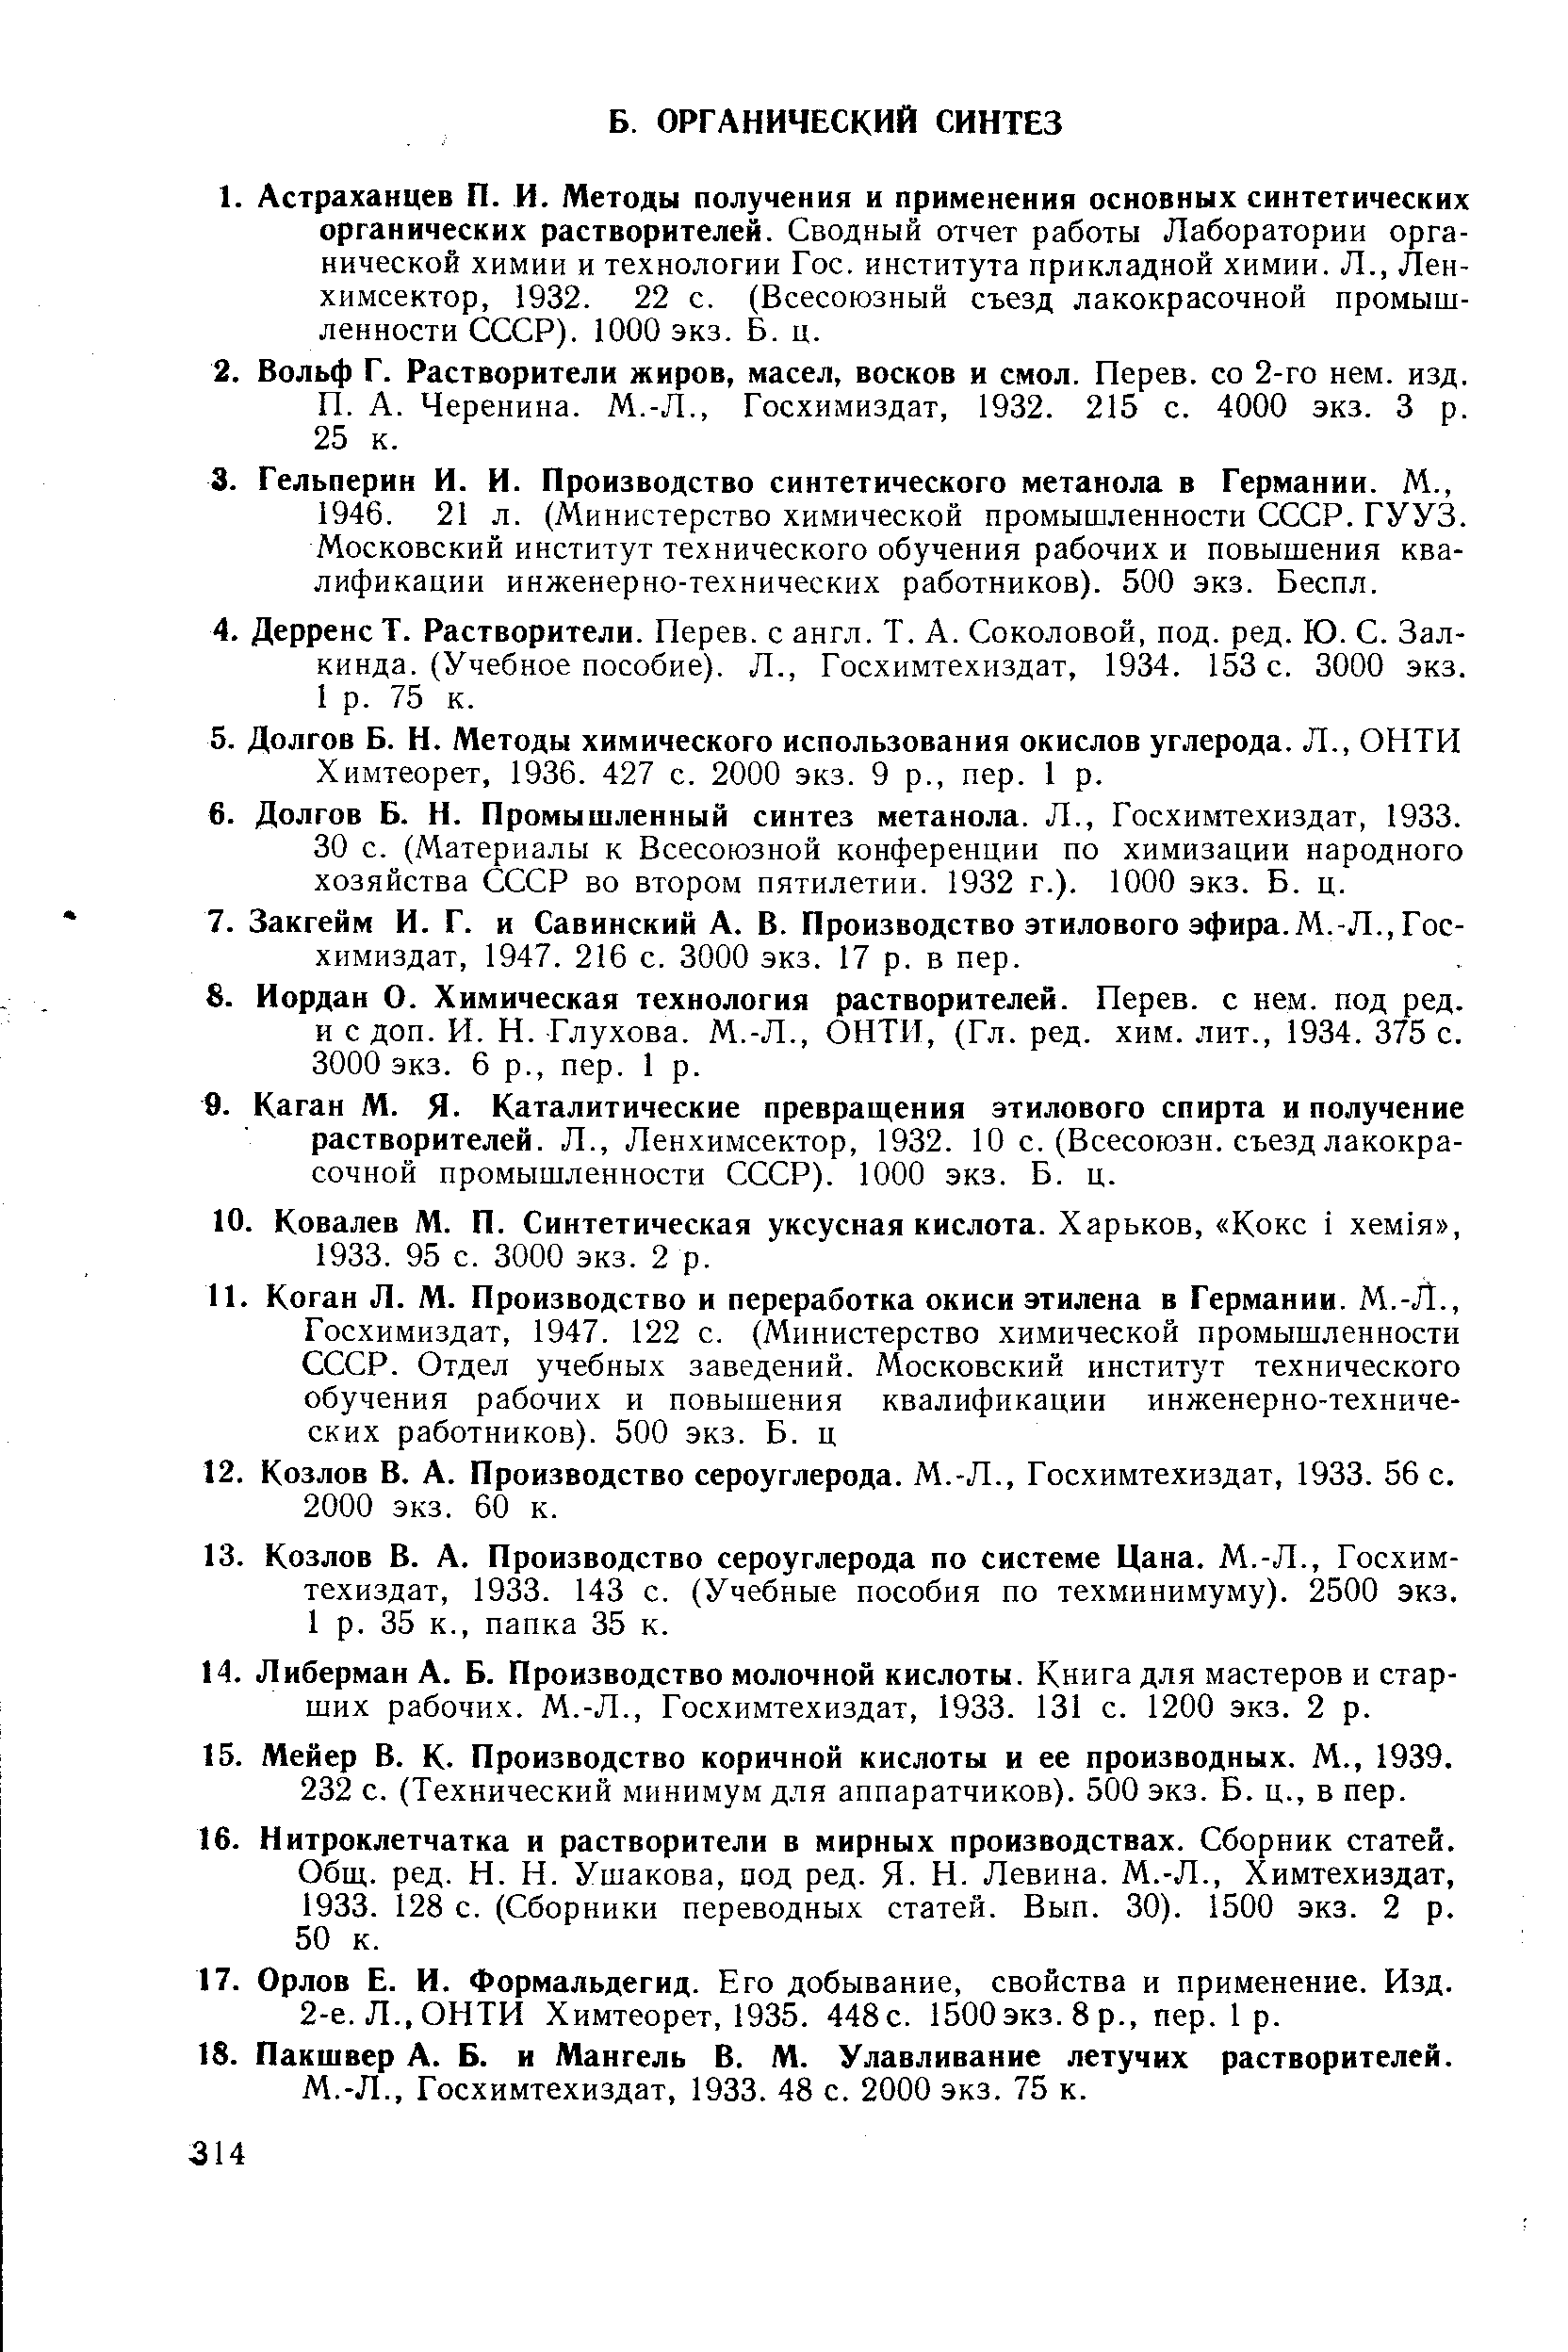 Химтеорет, 1936. 427 с. 2000 экз. 9 р., пер. 1 р.